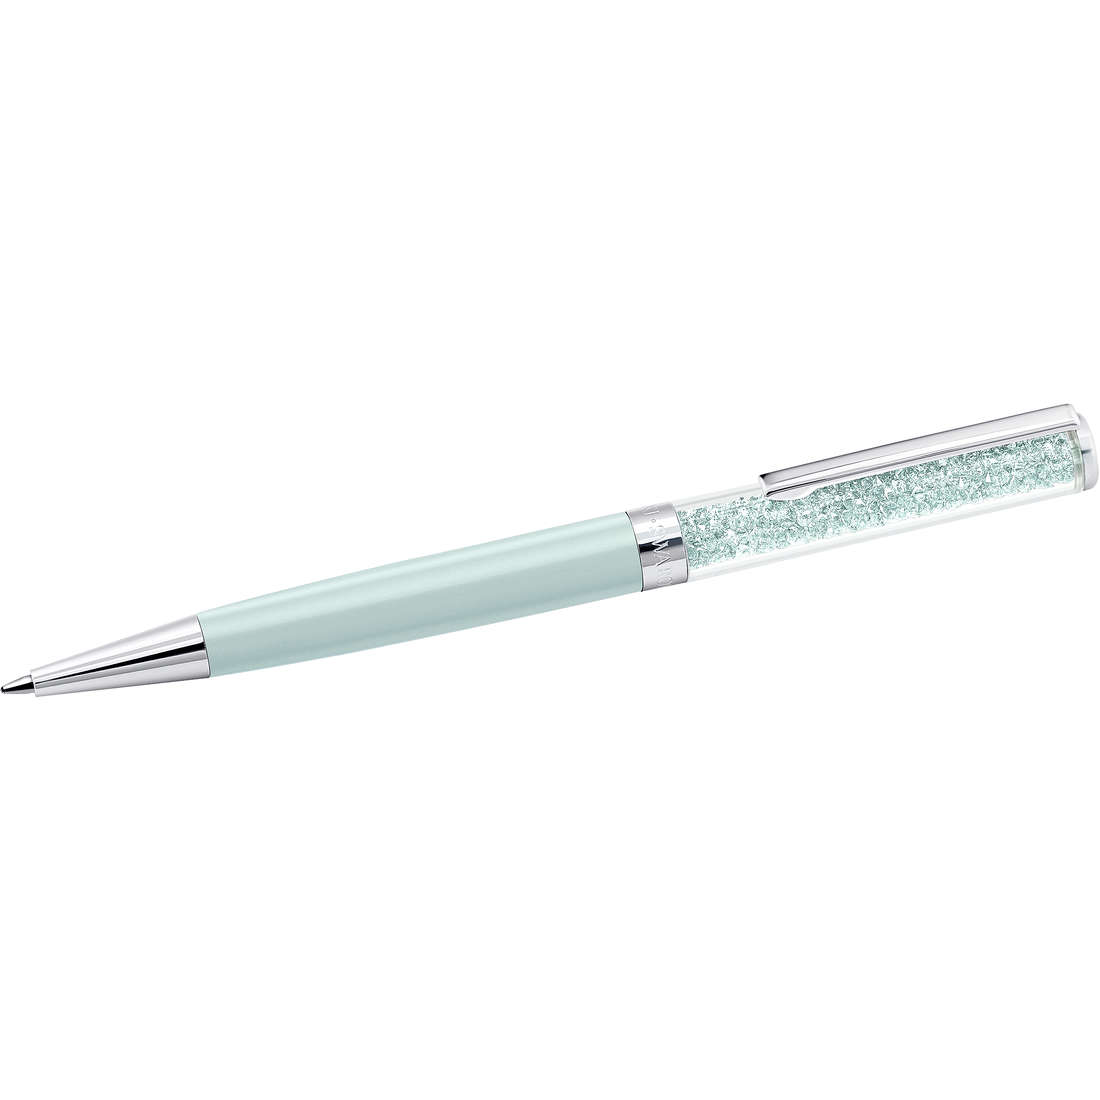 Stift Kugelschreiber Swarovski Crystalline da frau 5351072